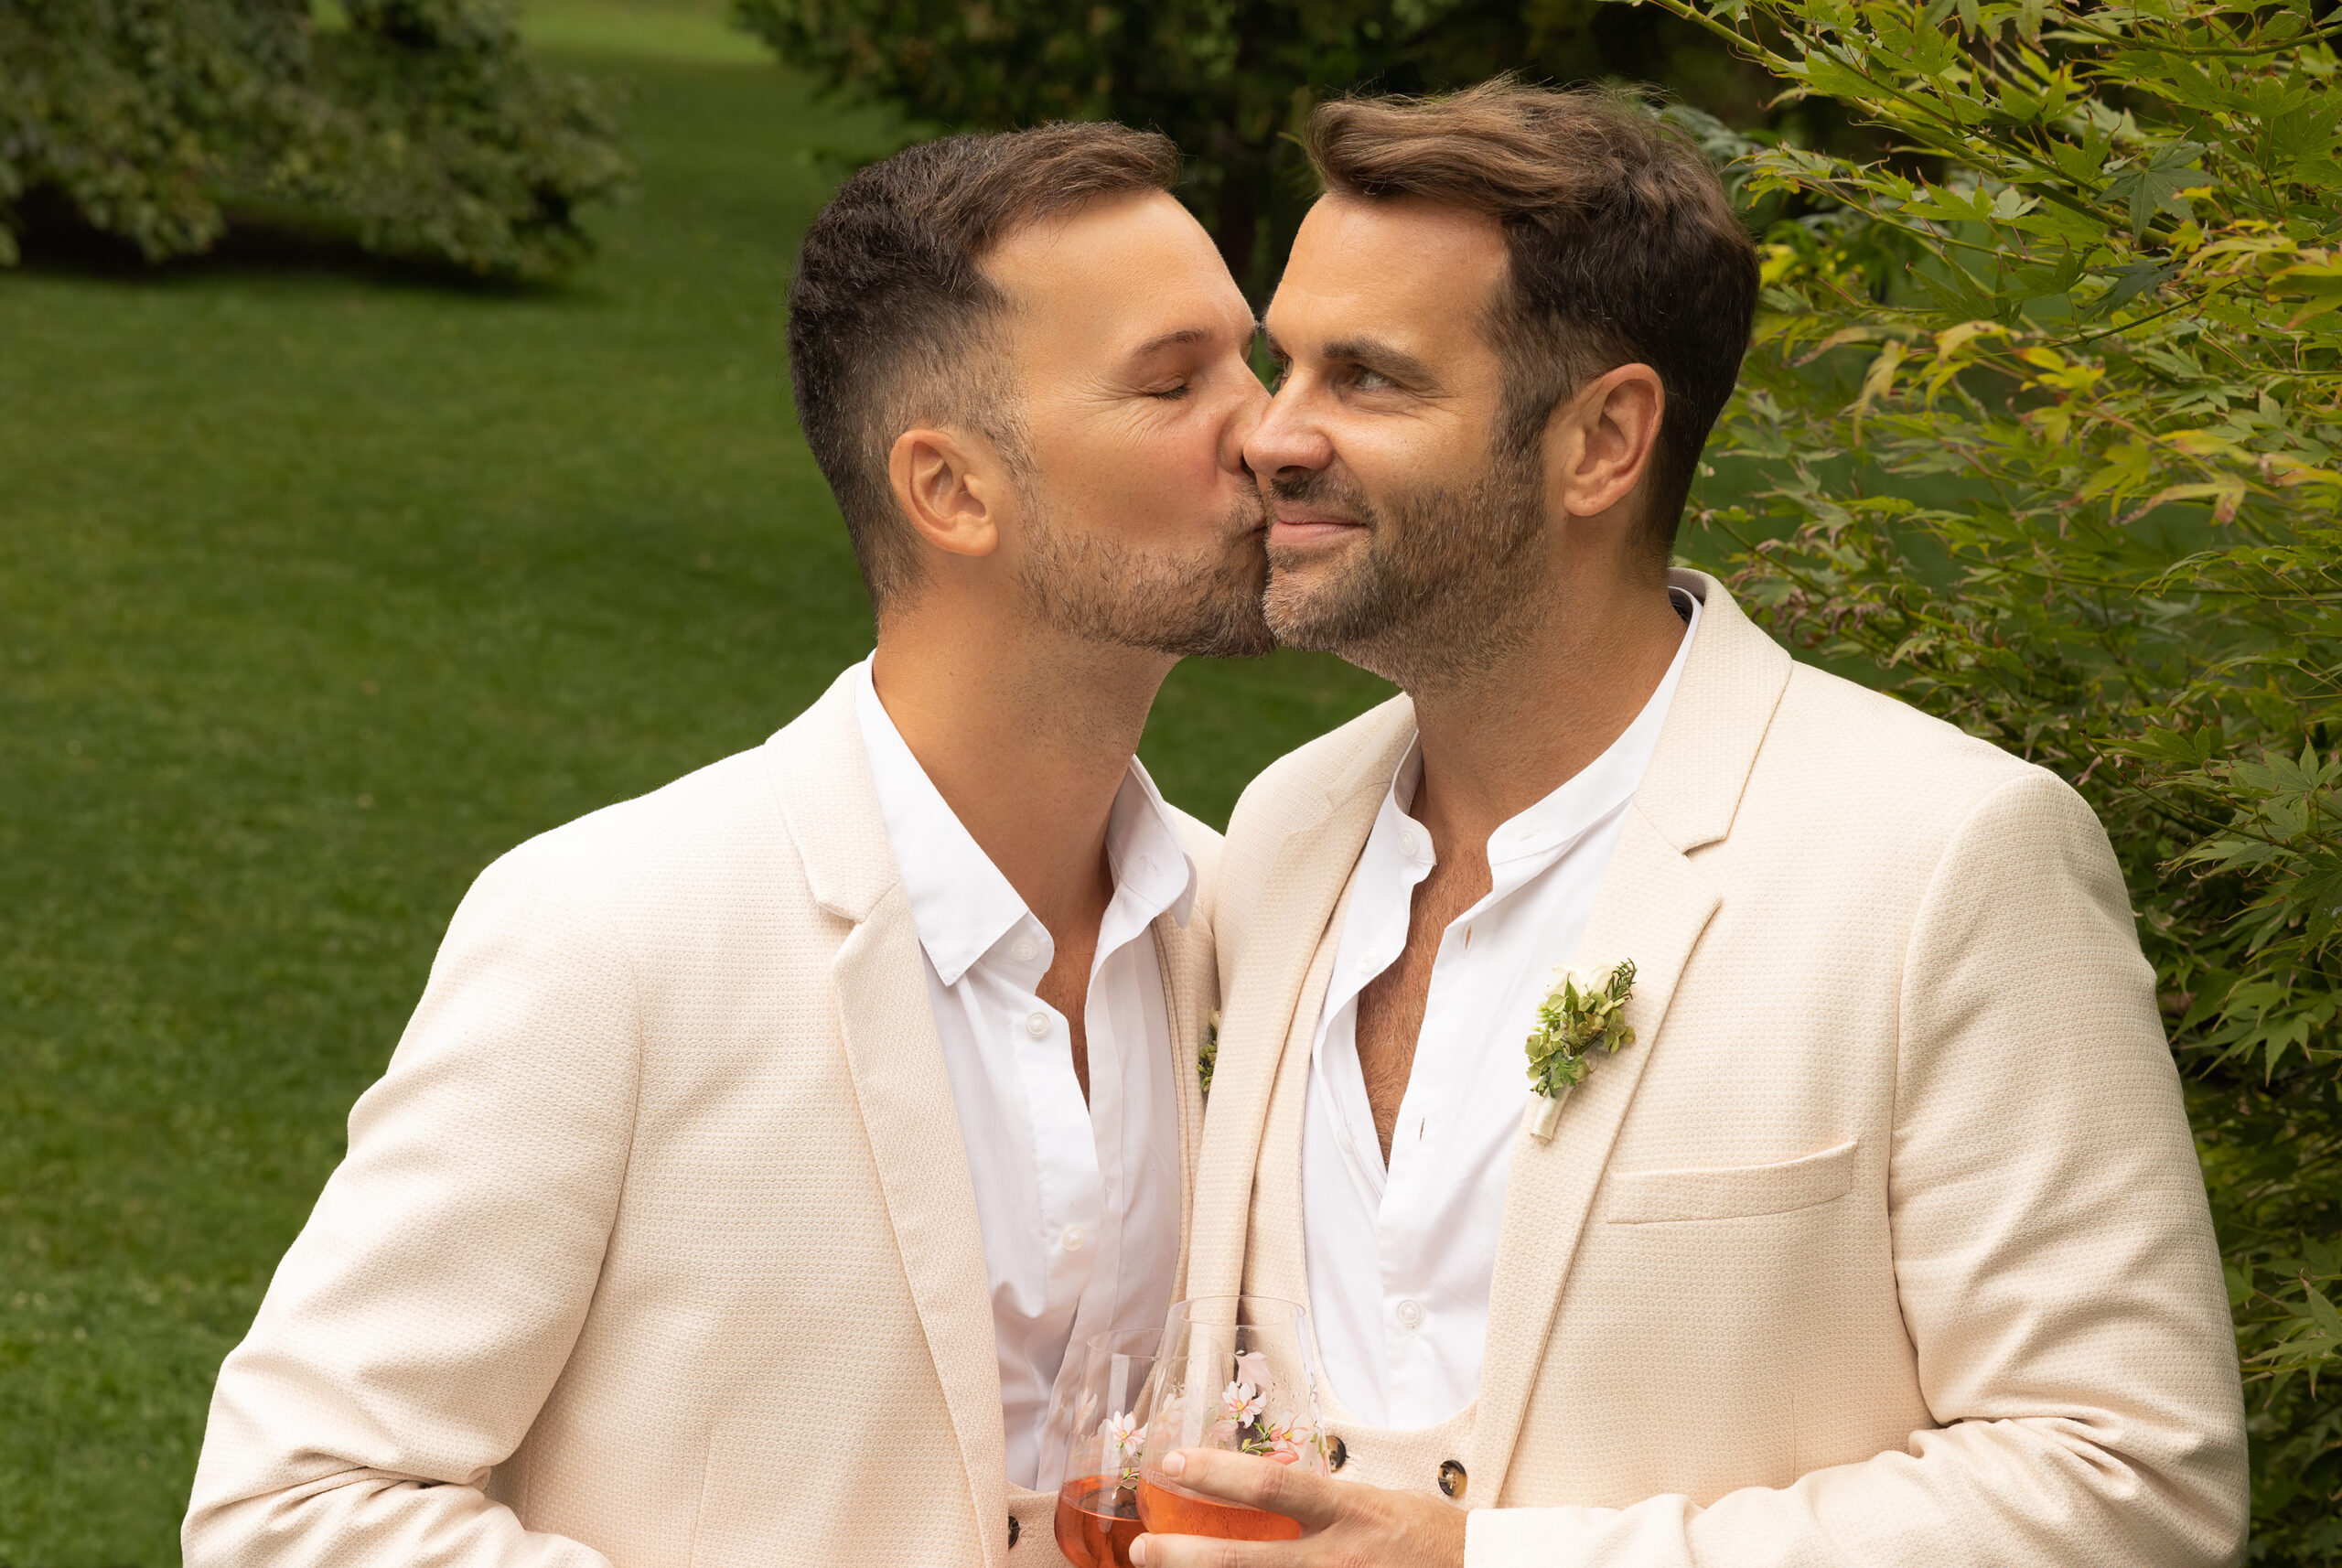 Zwei Männer in Hochzeitsanzügen in einem Park. Der eine Mann küsst den anderen auf die Wange.